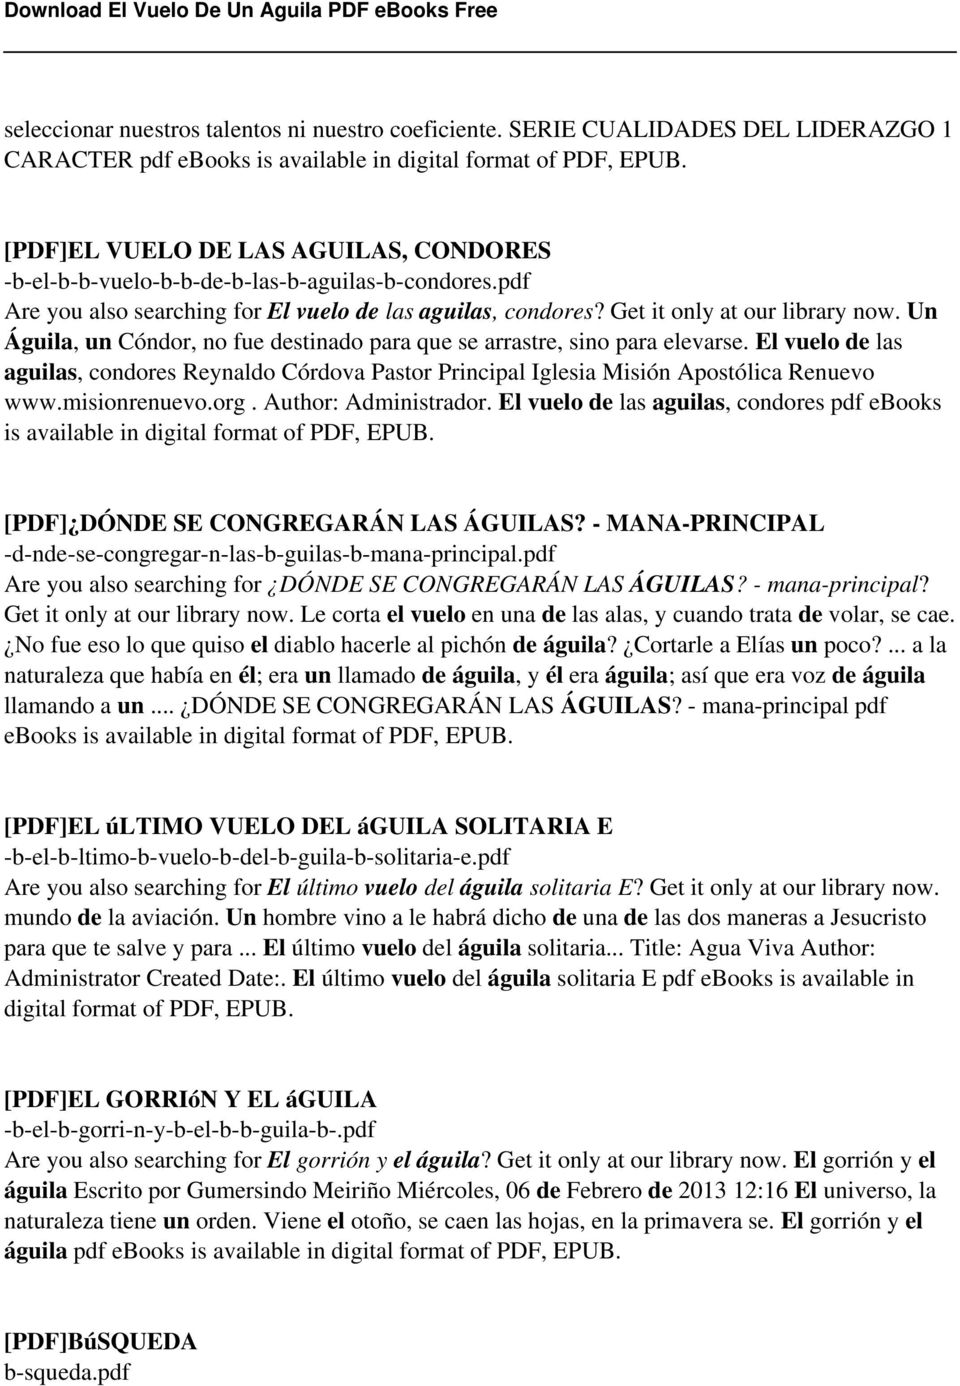 El Vuelo De Un Aguila PDF - PDF Descargar libre